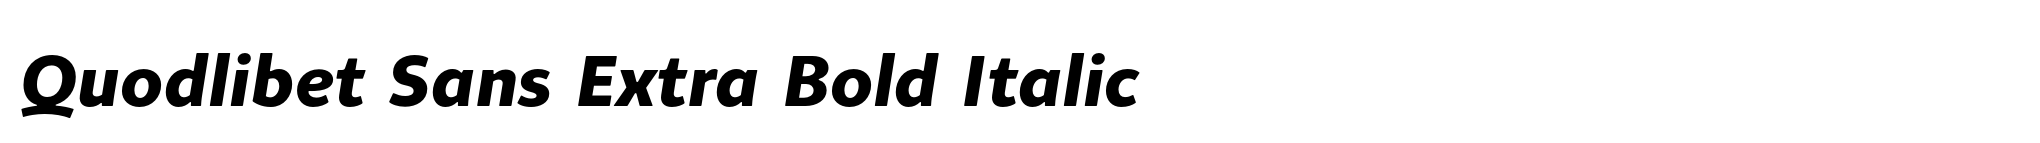 Quodlibet Sans Extra Bold Italic image